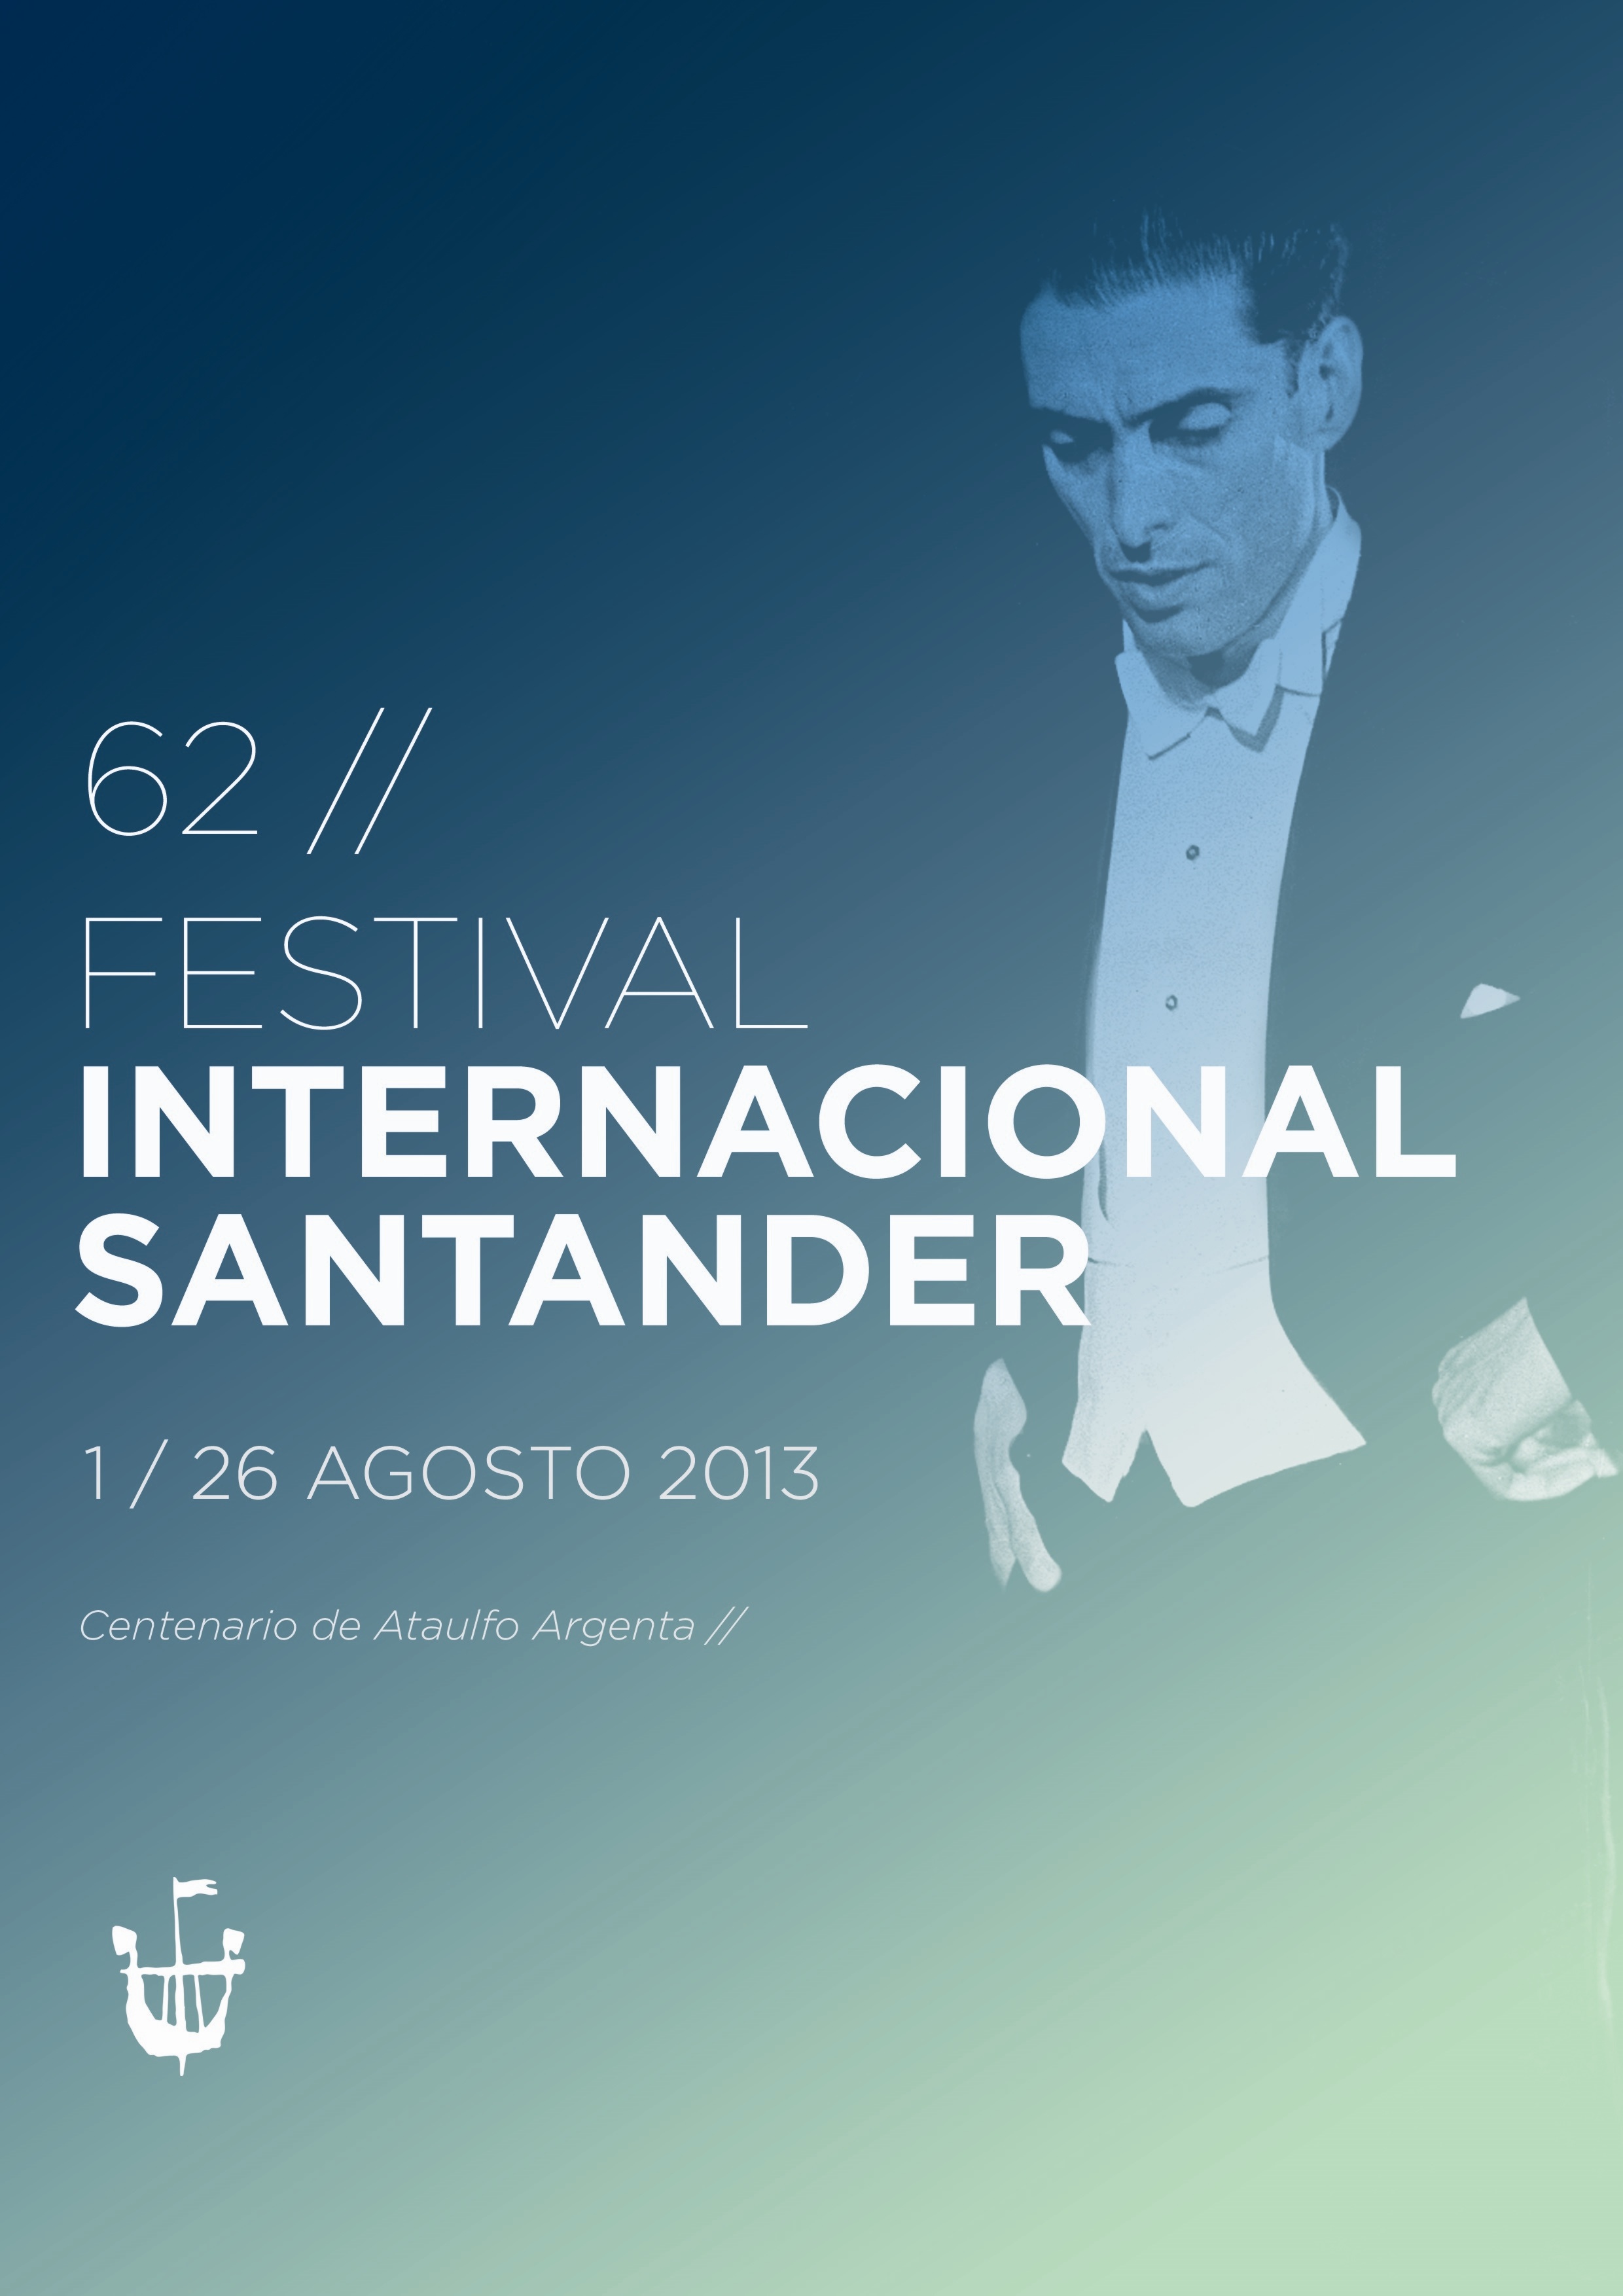 El día 17 comienza la venta de abonos y entradas para el Festival Internacional de Santander